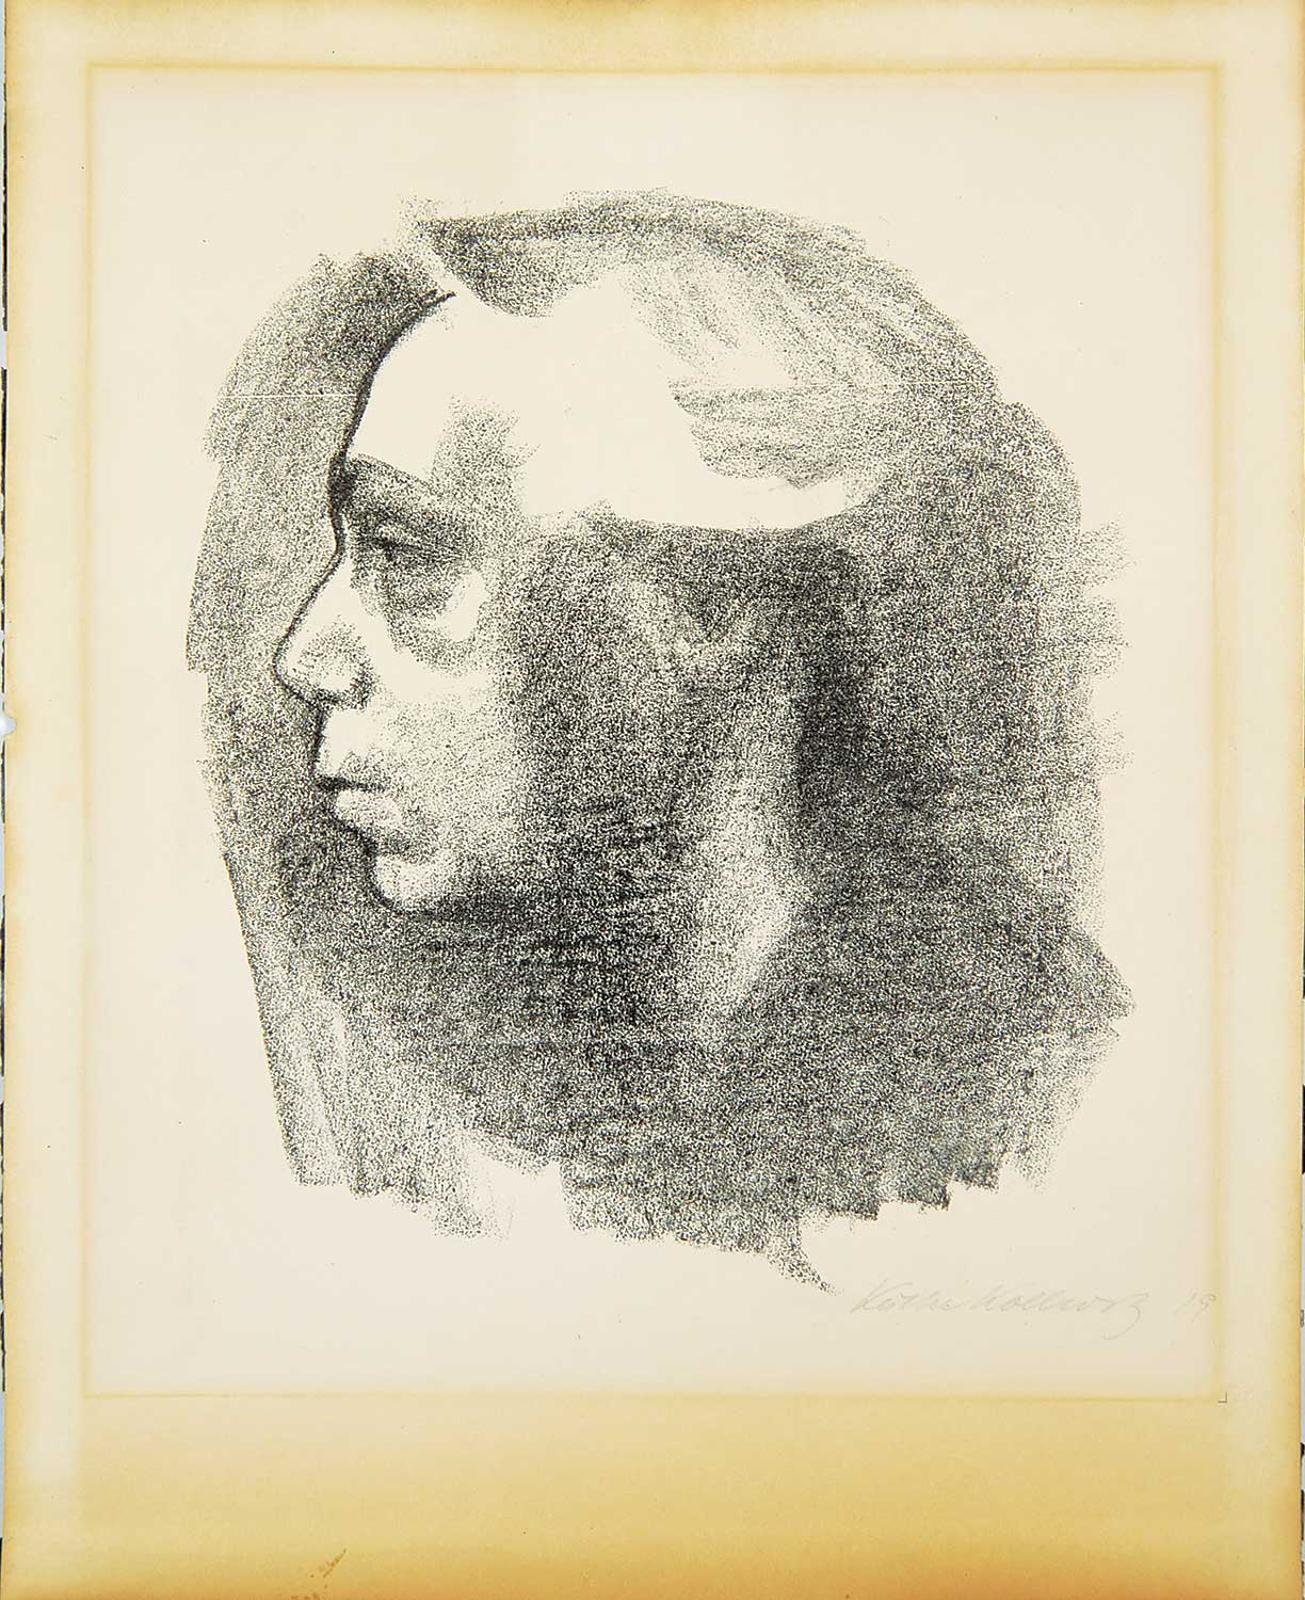 Kathe Kollwitz (1867-1945) - Self Portrait